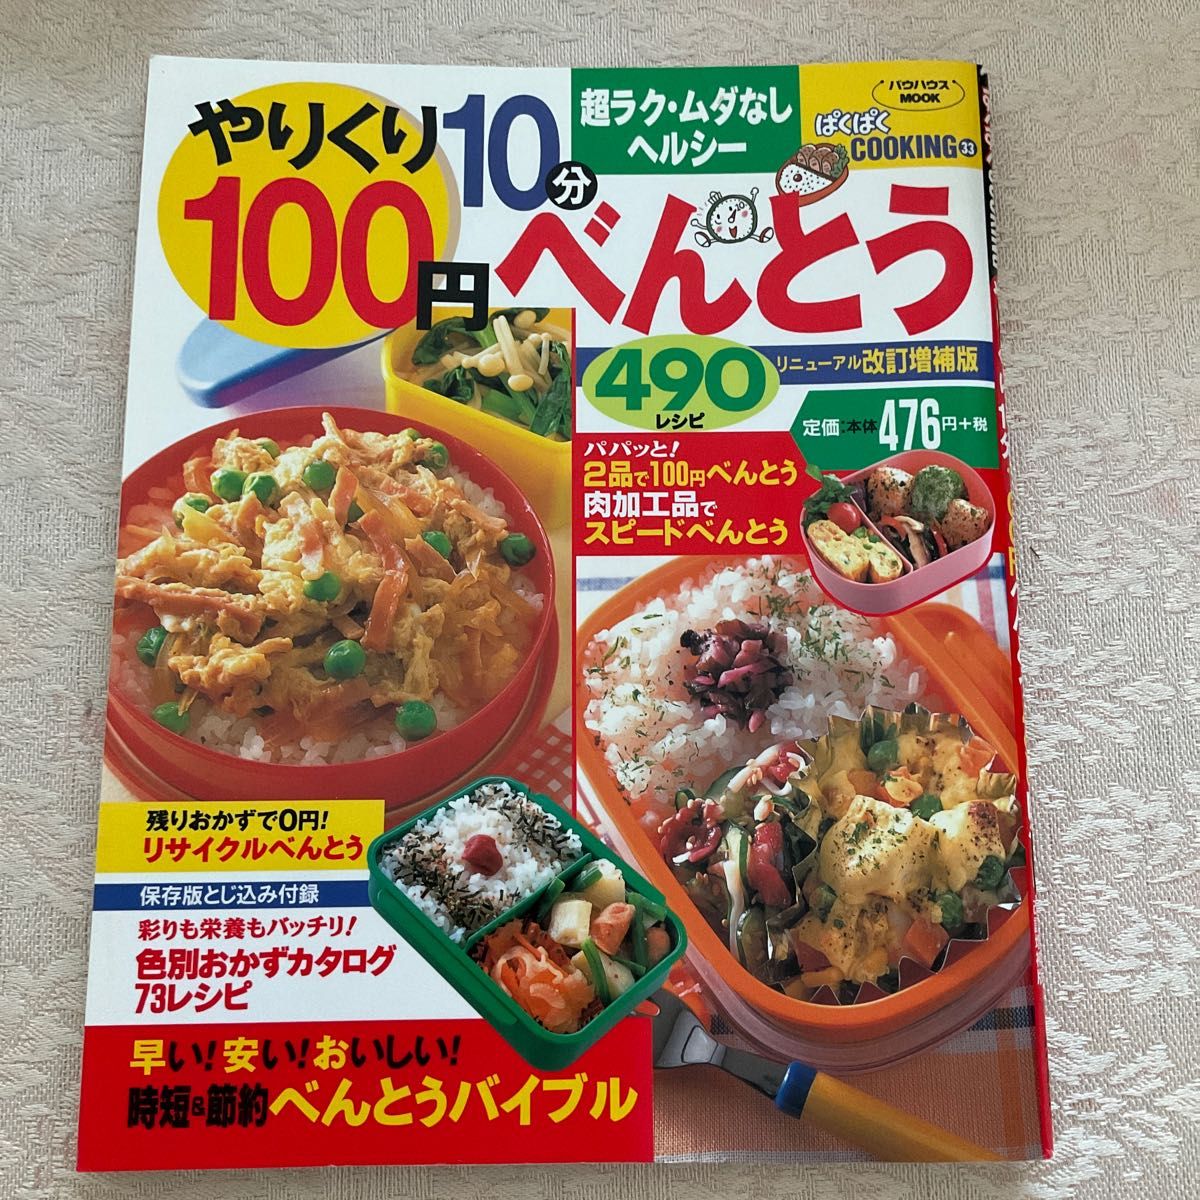 やりくり10分100円べんとう490レシピ (バウハウスMOOK―ぱくぱくCOOKING)